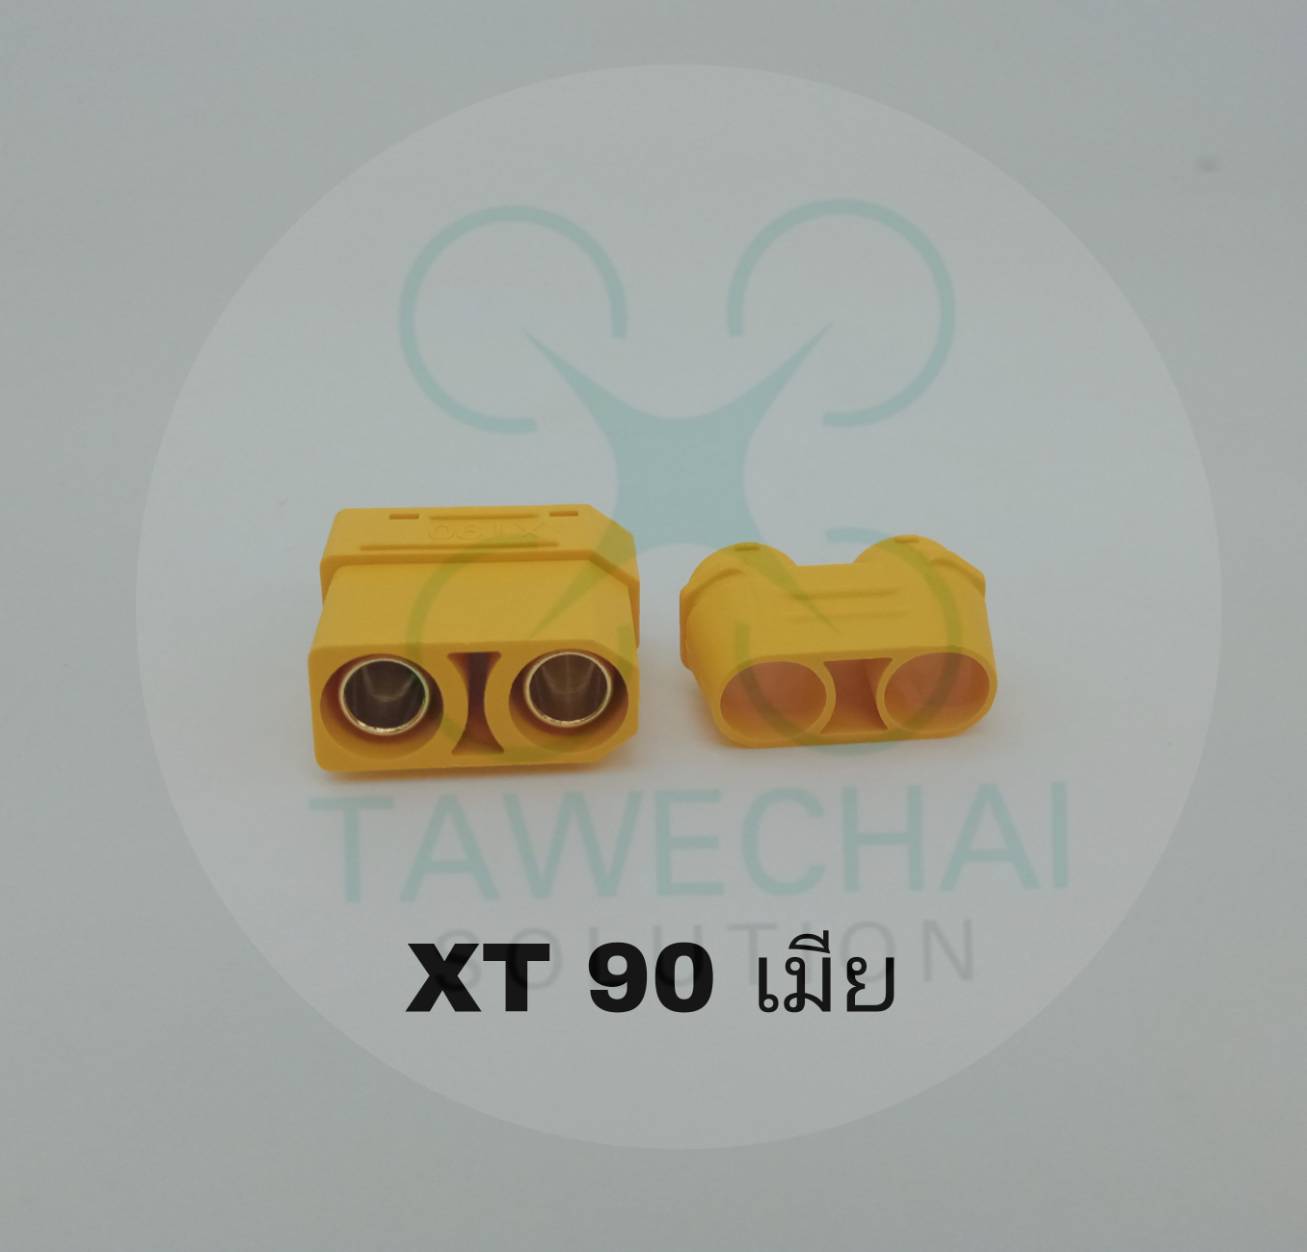 ปลั๊ก XT 90 มีปลอกกันช็อด มีให้เลือก ตัวผู้ ตัวเมีย  (ร้านในไทย  ส่งเร็ว)